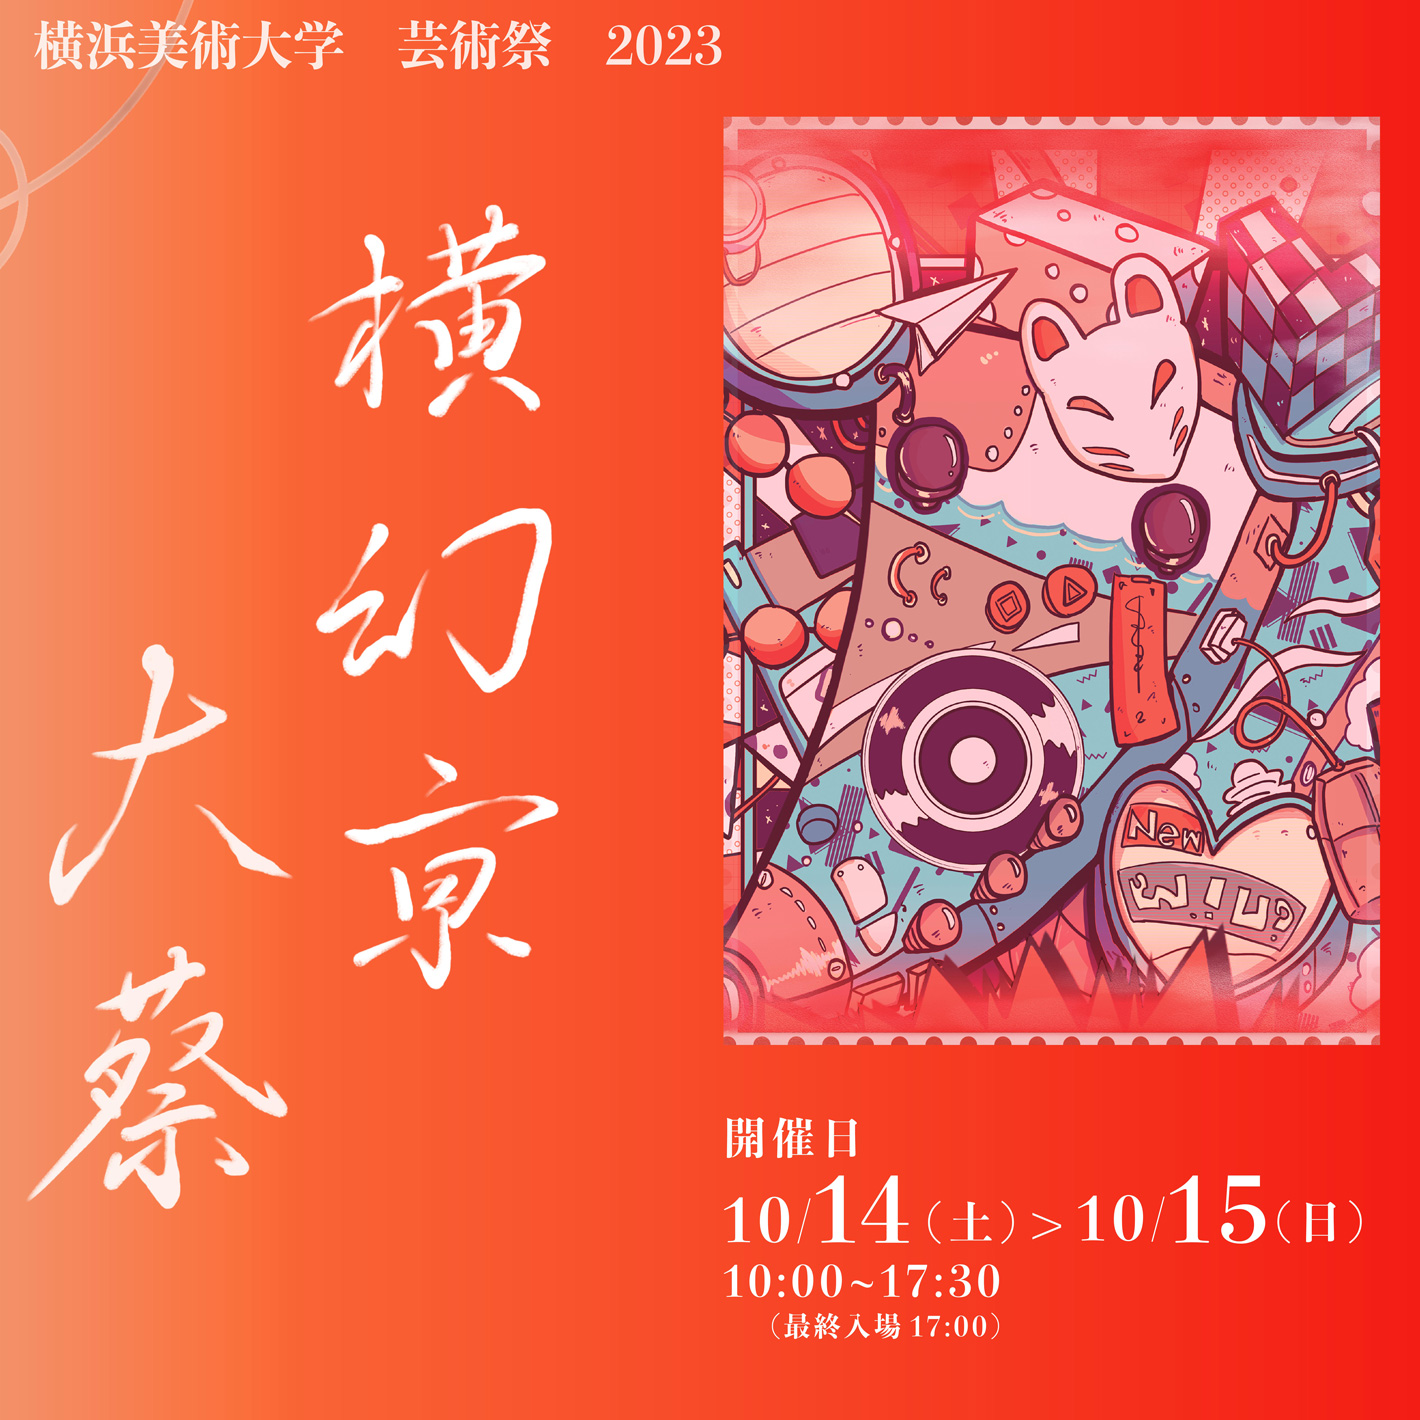 芸術祭 2023「横幻亰大蔡」 イメージ